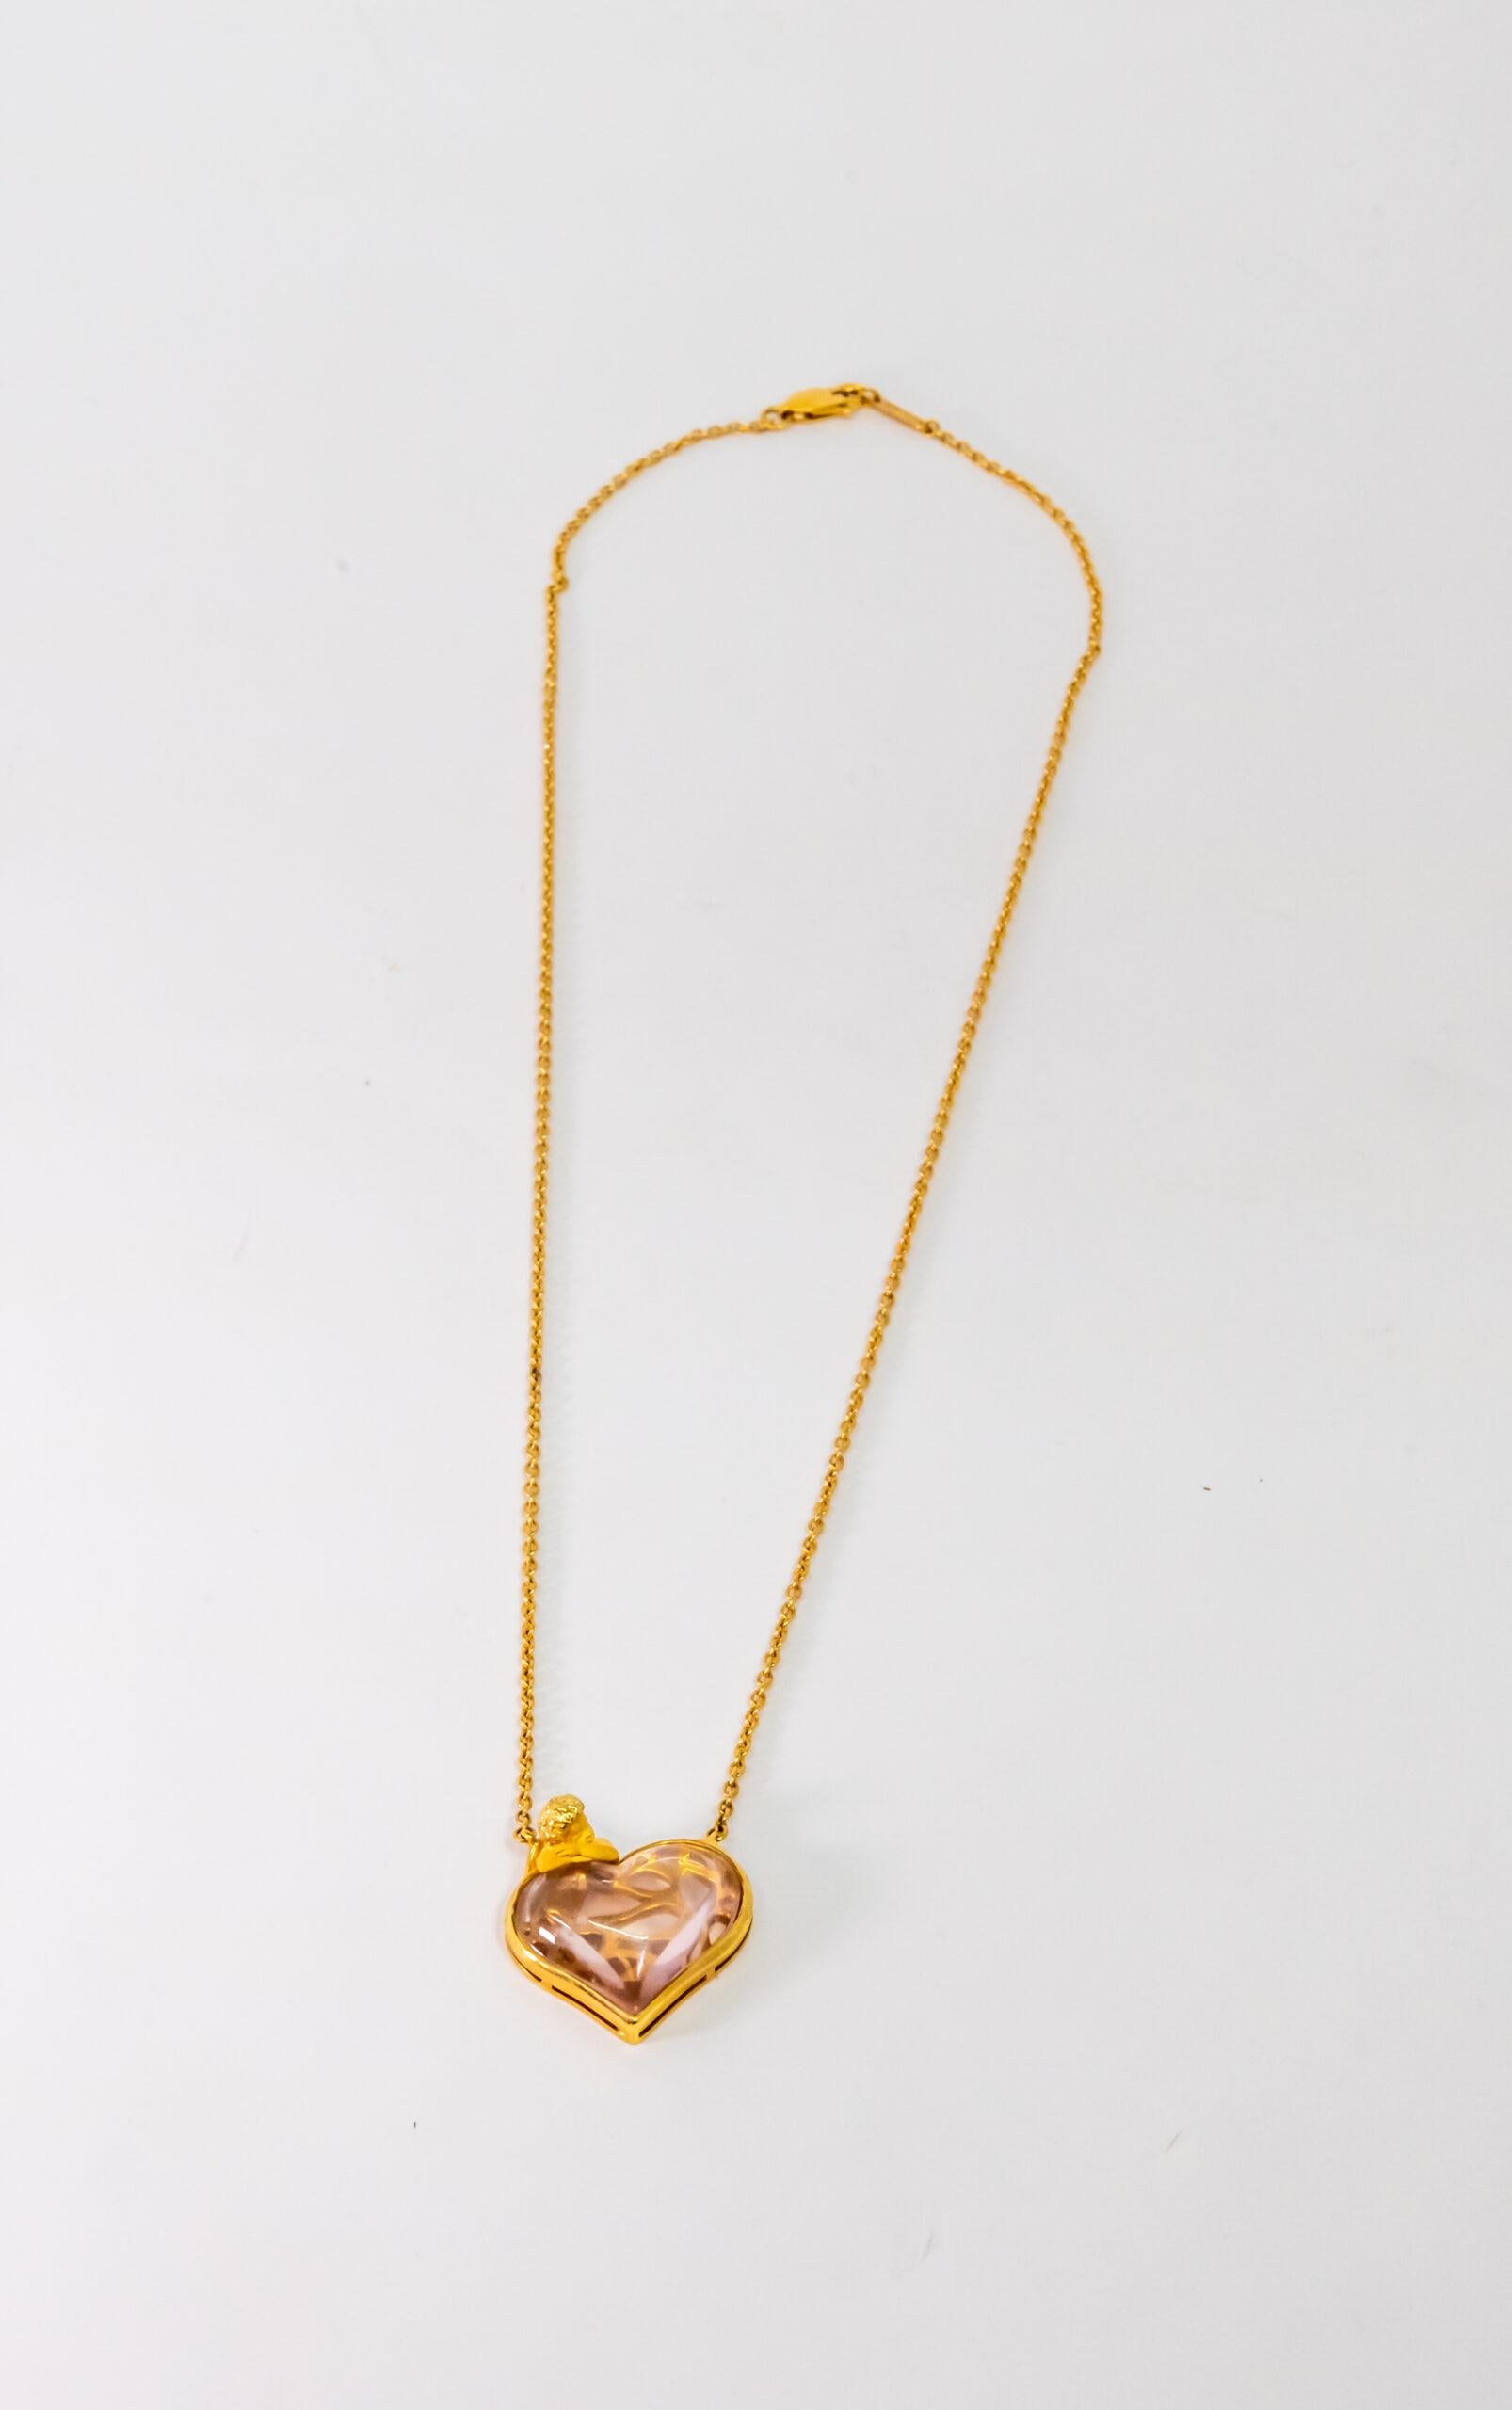 Pendentif en or jaune 18 carats. Chaîne Rolo en or jaune 18K avec fermoir à pinces de homard. Cette pièce est ornée d'une figure d'ange en or jaune et d'un pendentif en cristal de roche en forme de cœur.

Longueur : 23 cm